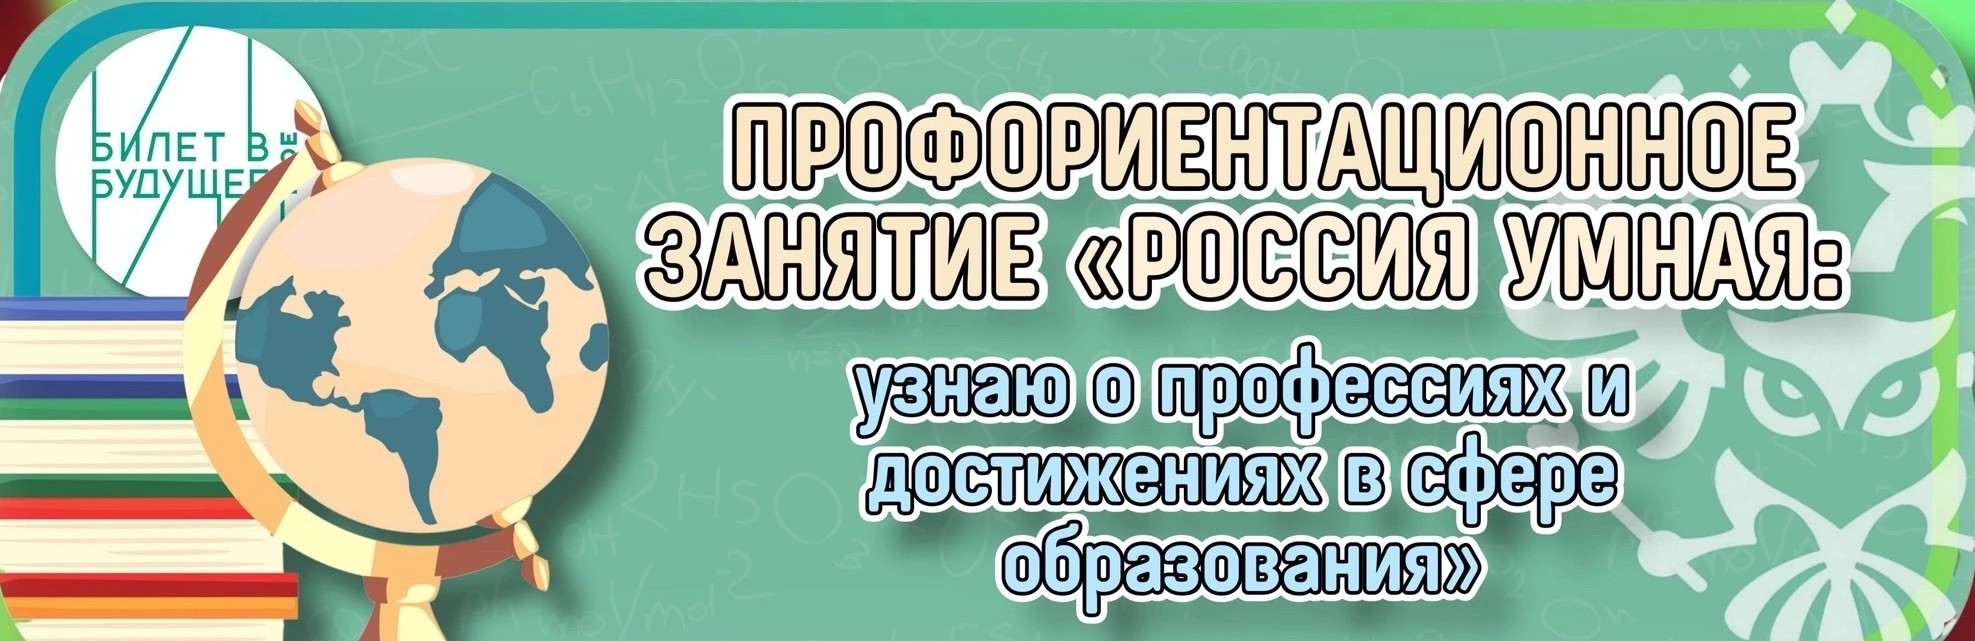 Профориентационное занятие «Россия умная: узнаю о профессиях и достижениях в сфере образования».